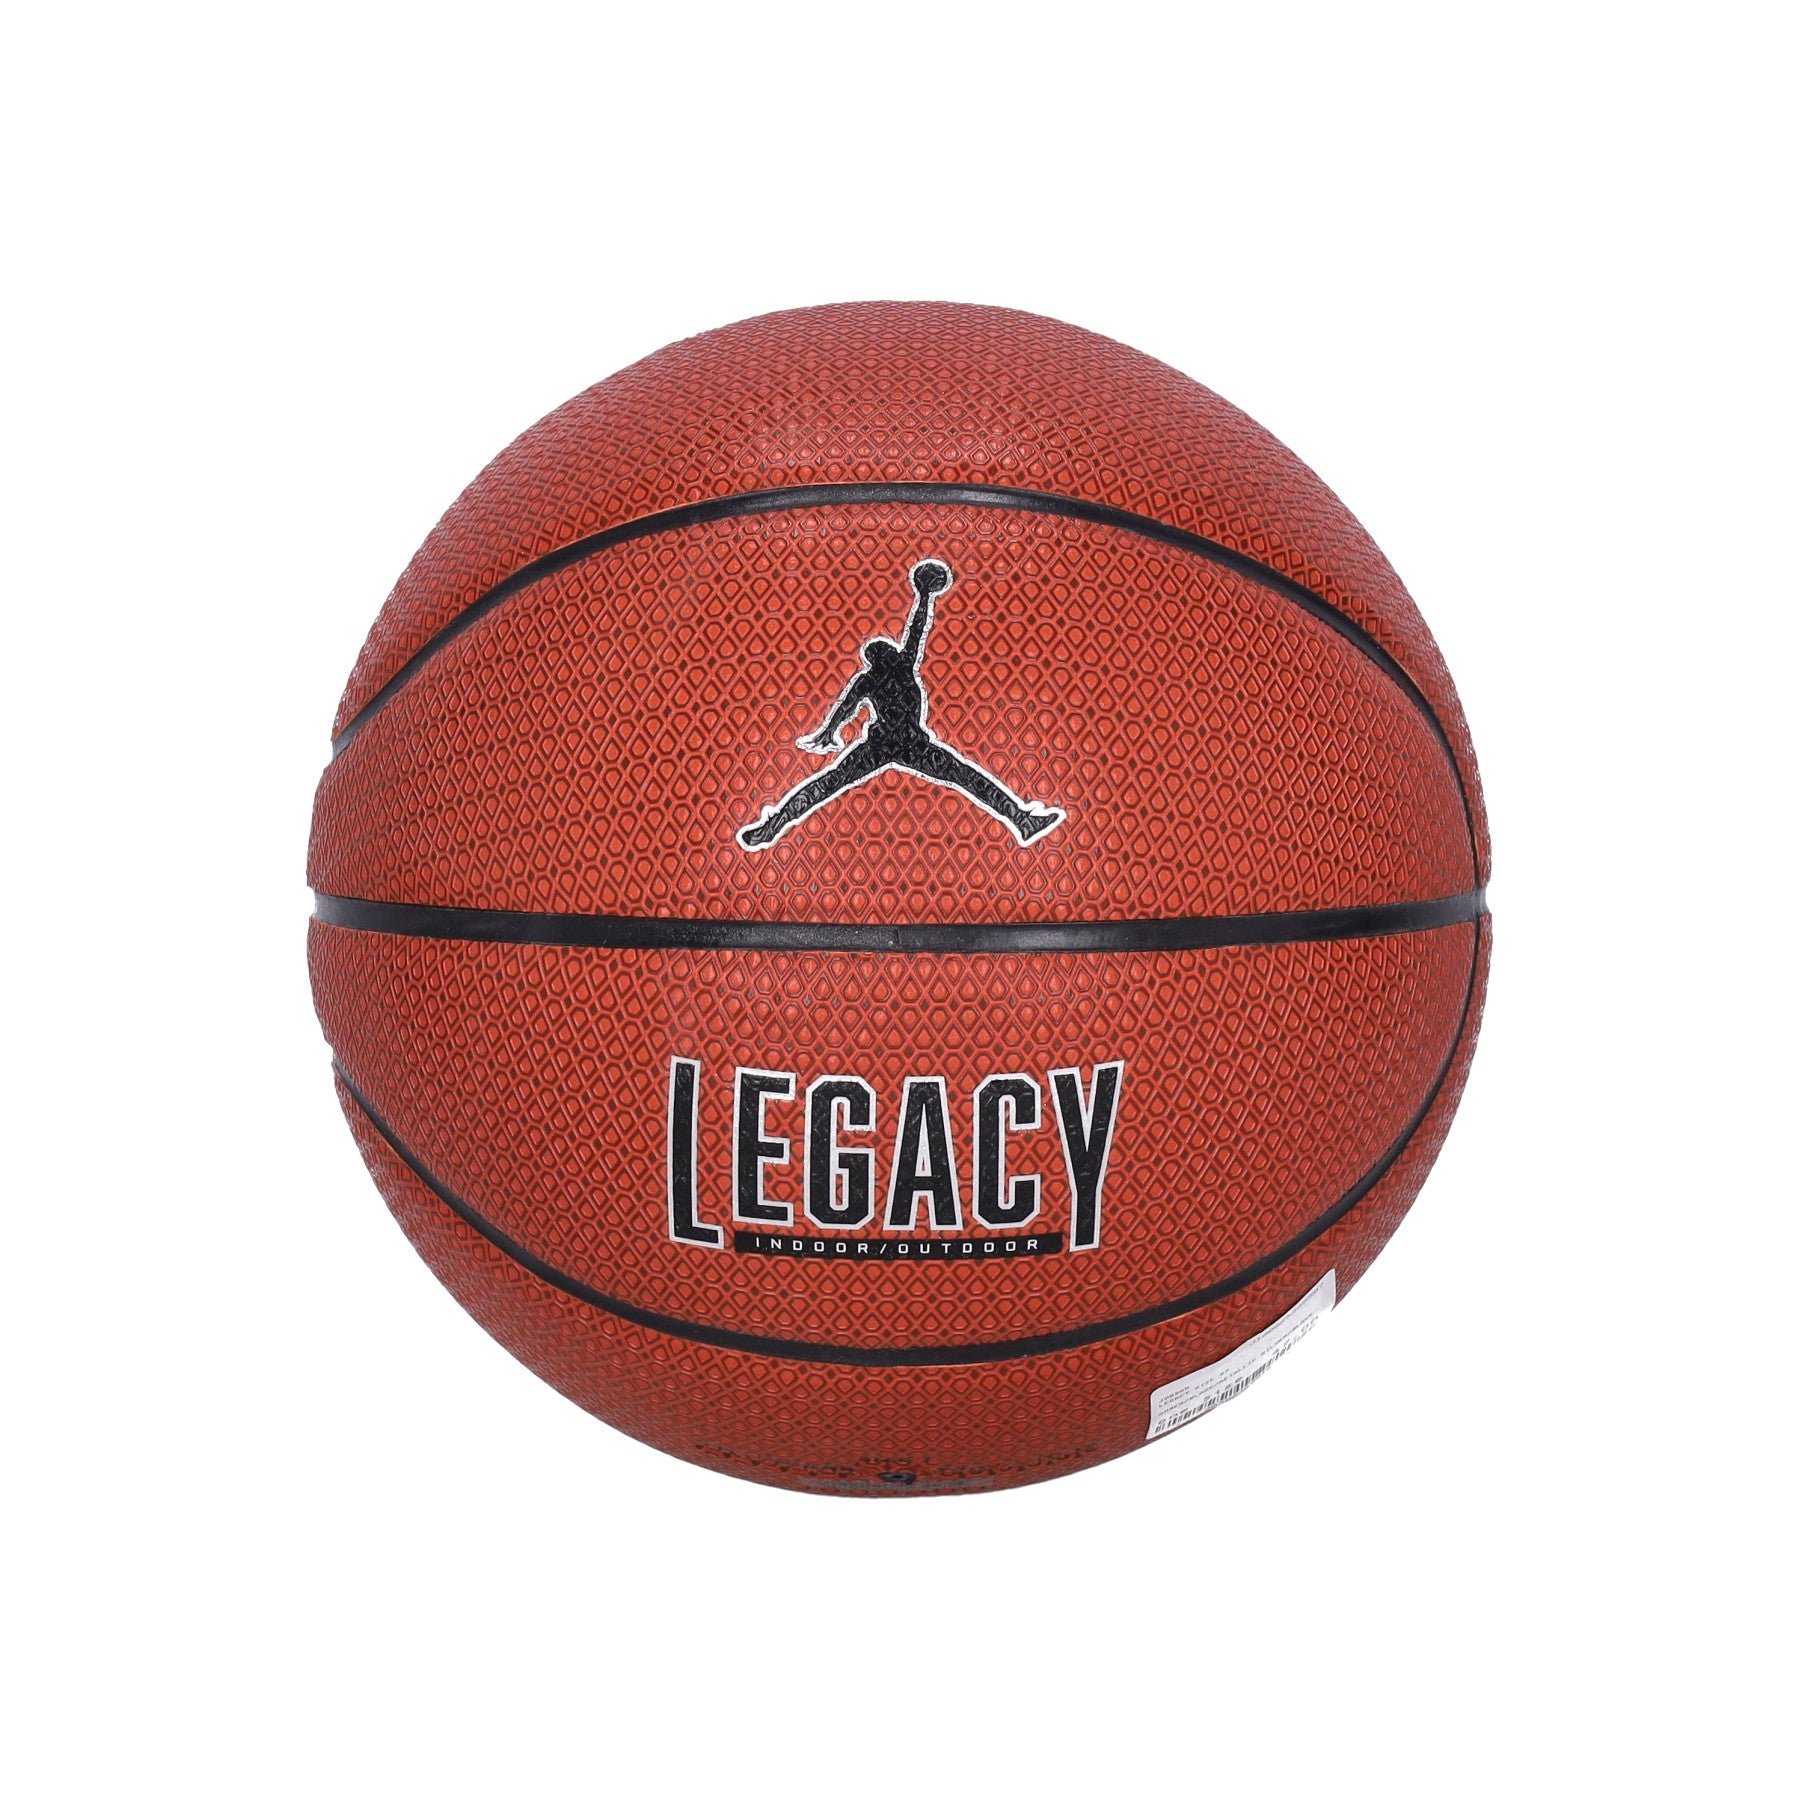 Jordan Nba, Pallone Uomo Legacy Size 07, 